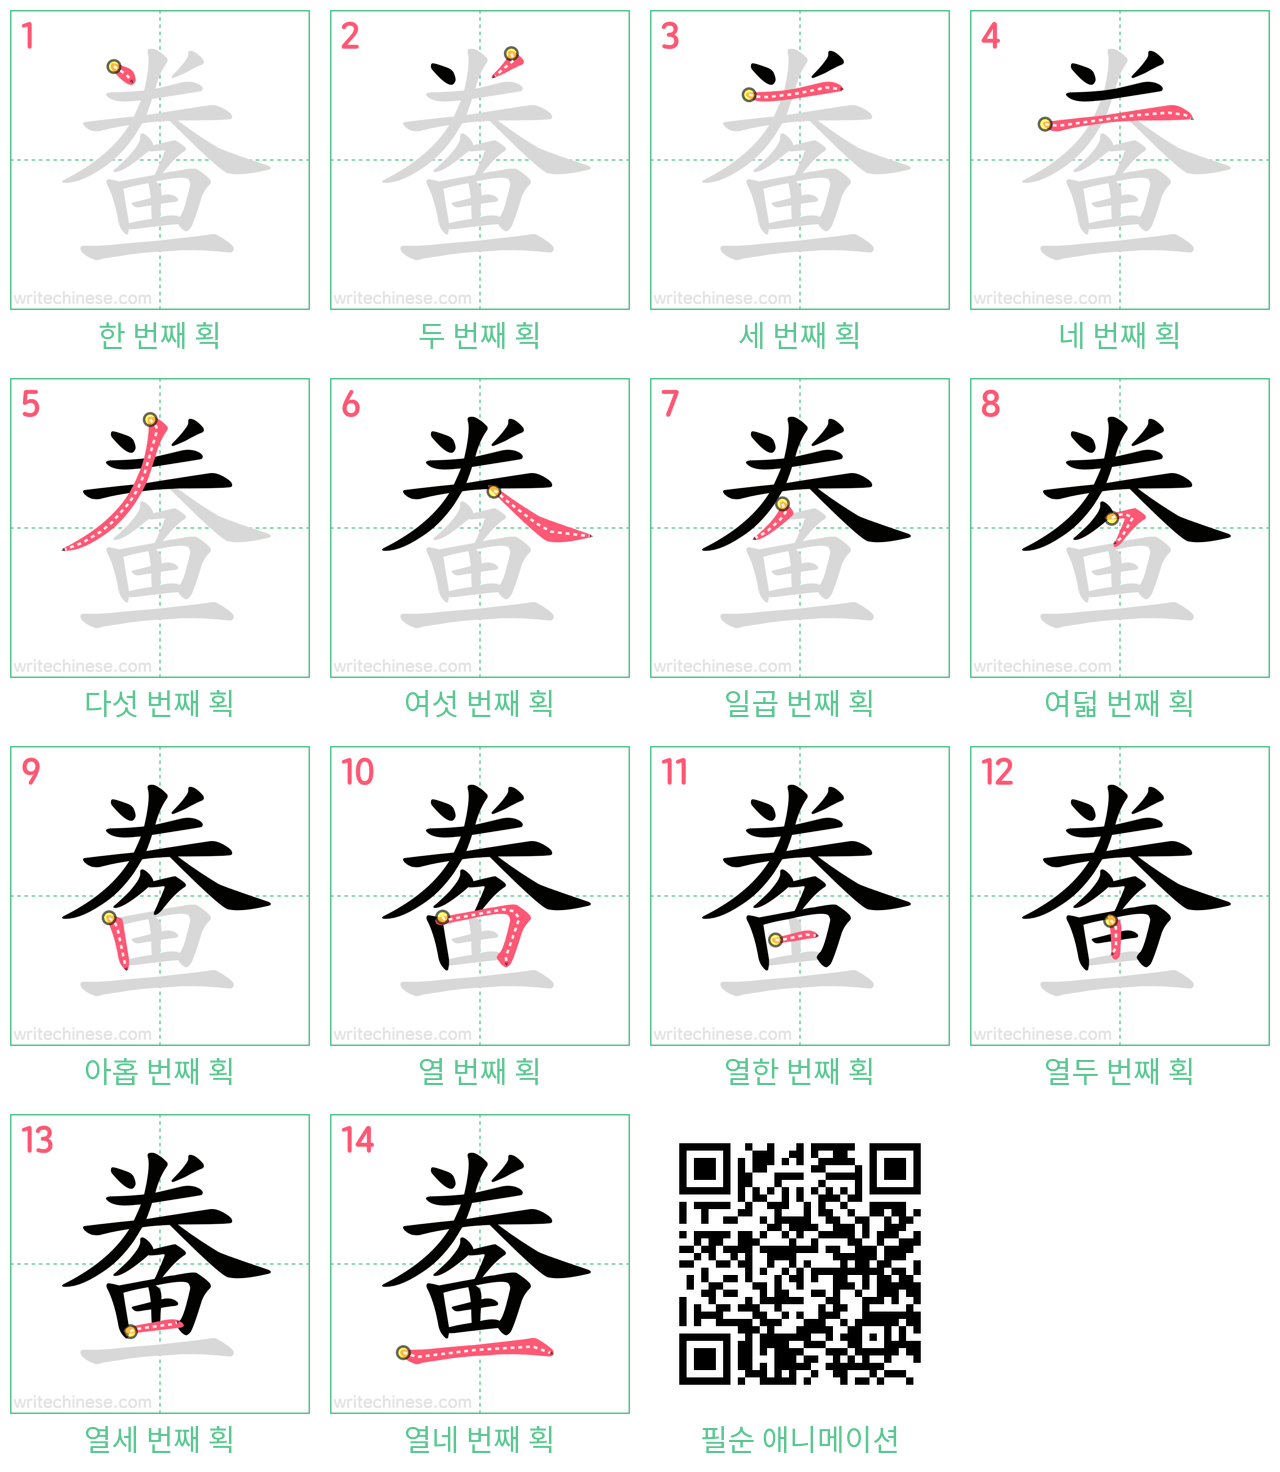 鲞 step-by-step stroke order diagrams